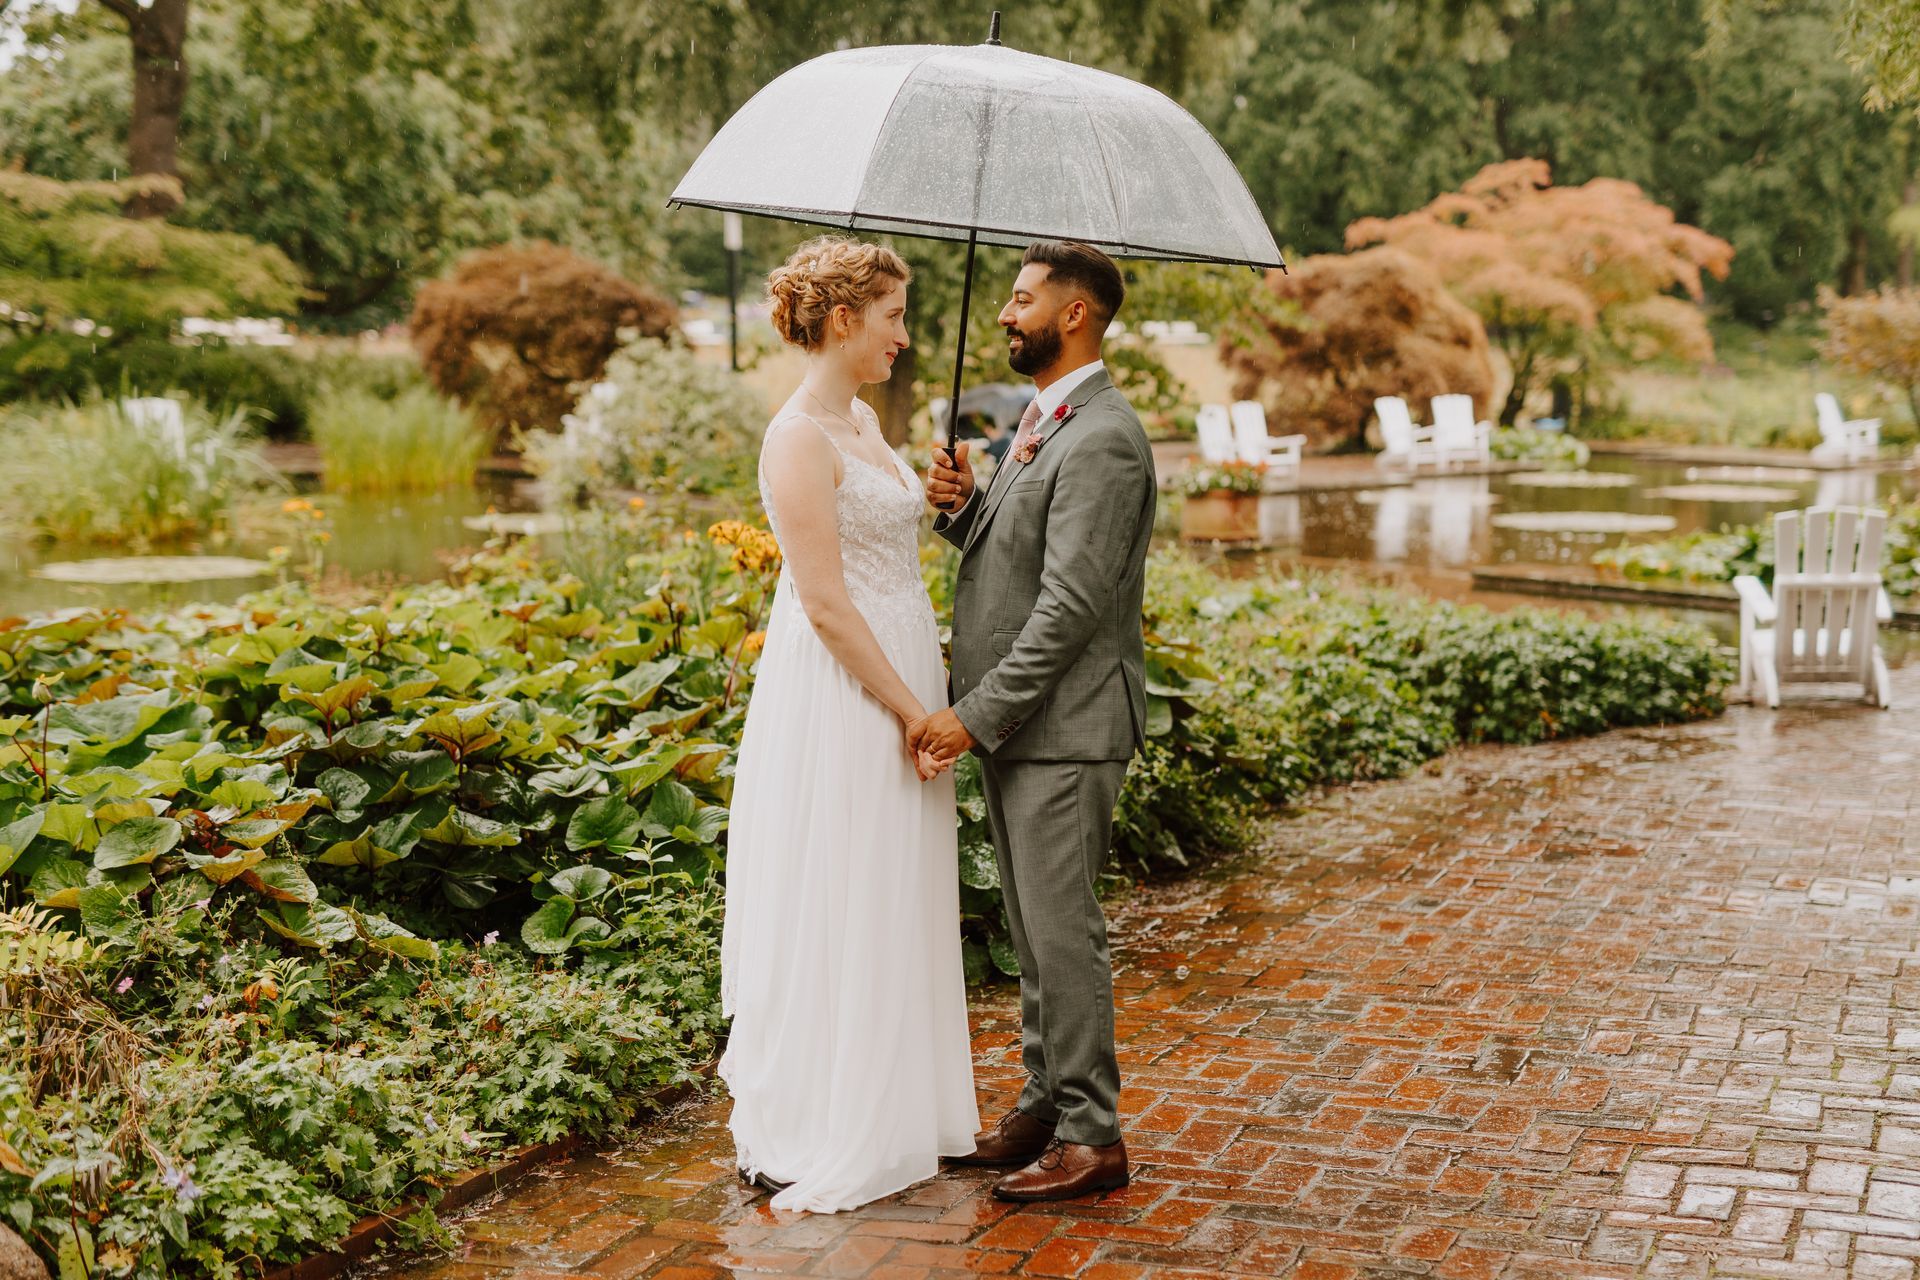 Es regnet, das Brautpaar steht steht unter einem Regenschirm,sie blicken sich verliebt an. Er trägt einen salbeifarbenen Anzug und sie trägt ein fließendes Kleid mit Spitzenoberteil.Ihre blonden Haare sind locker aufgesteckt .